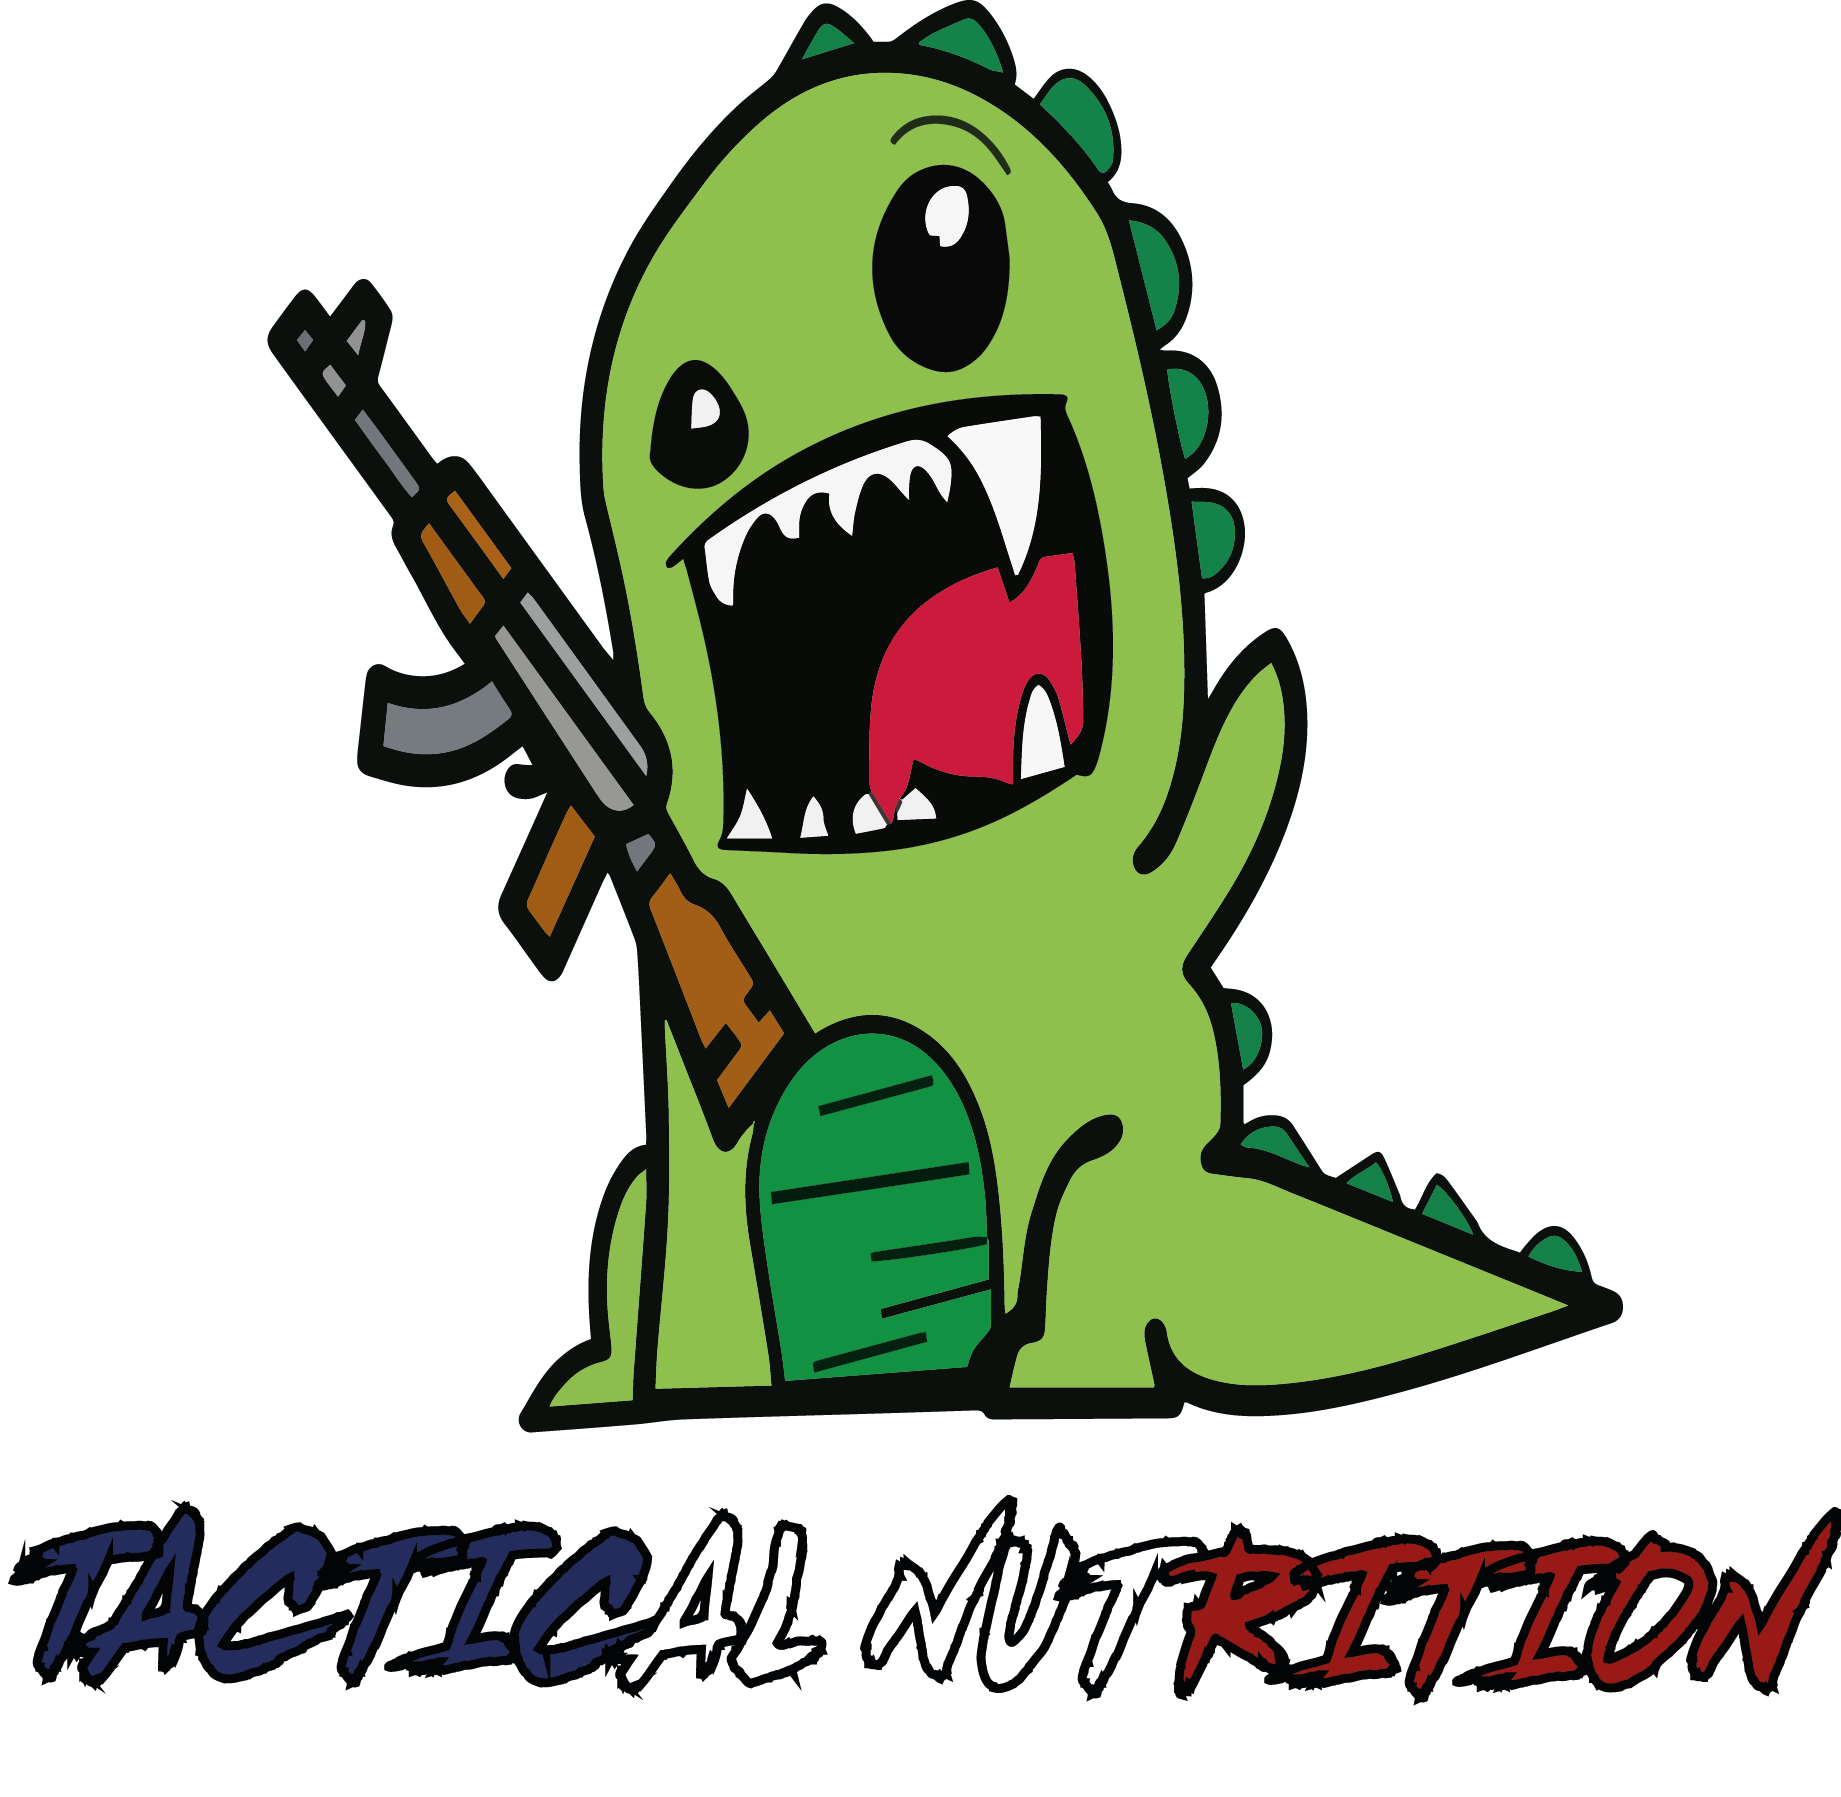 Tactical Nutrition Partenaire